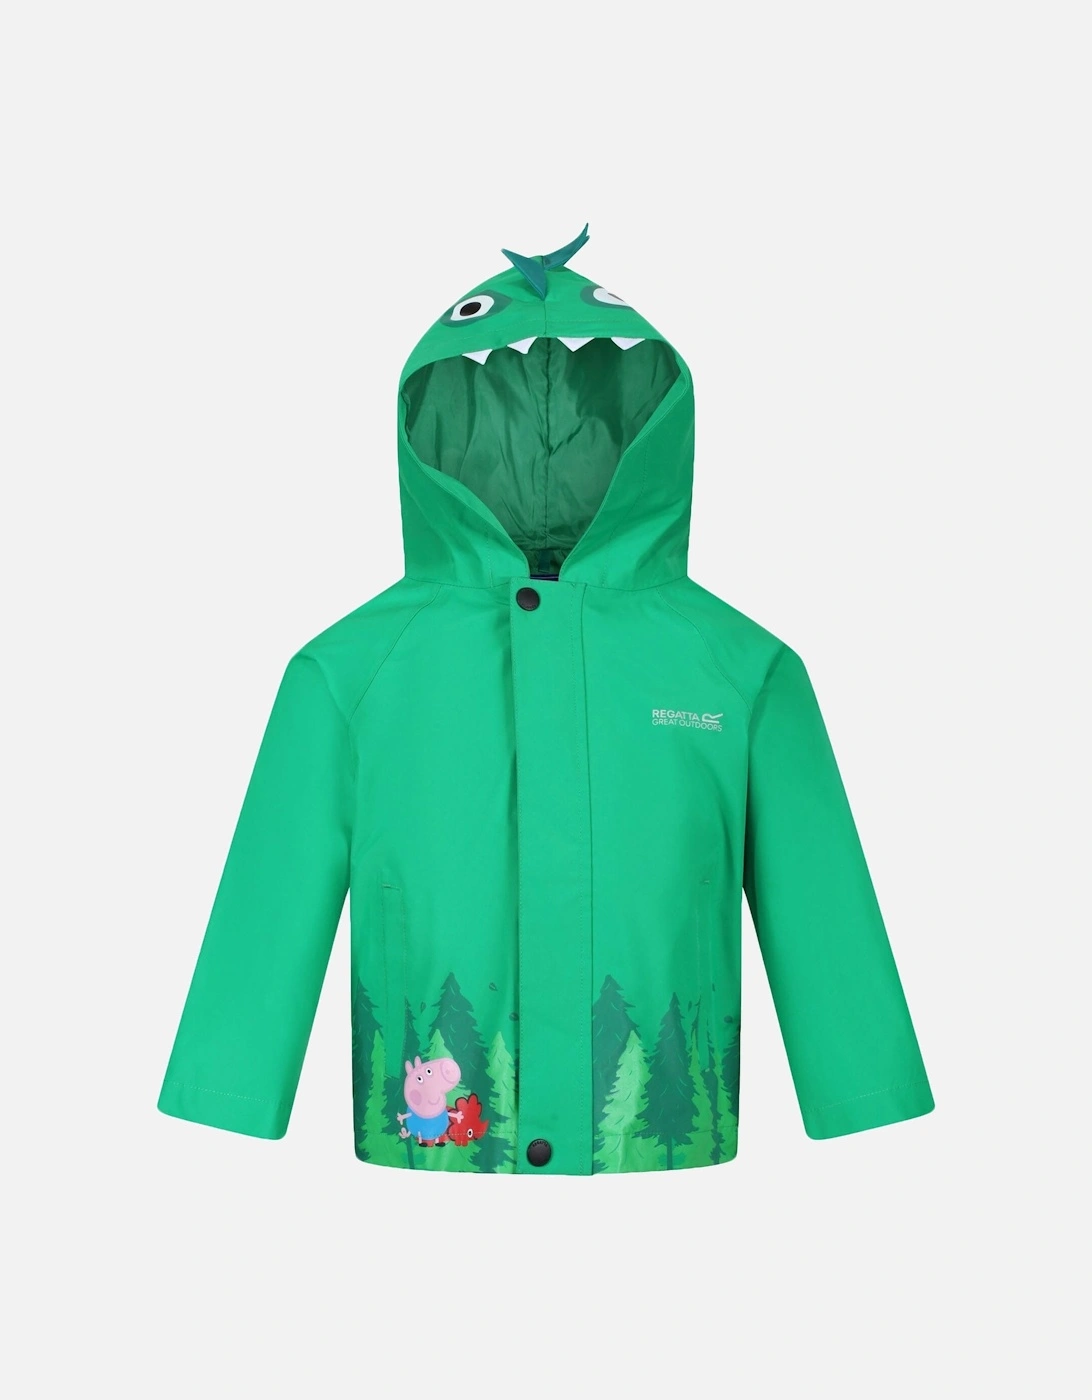 Kids Peppa Pig Waterproof Animal Jacket